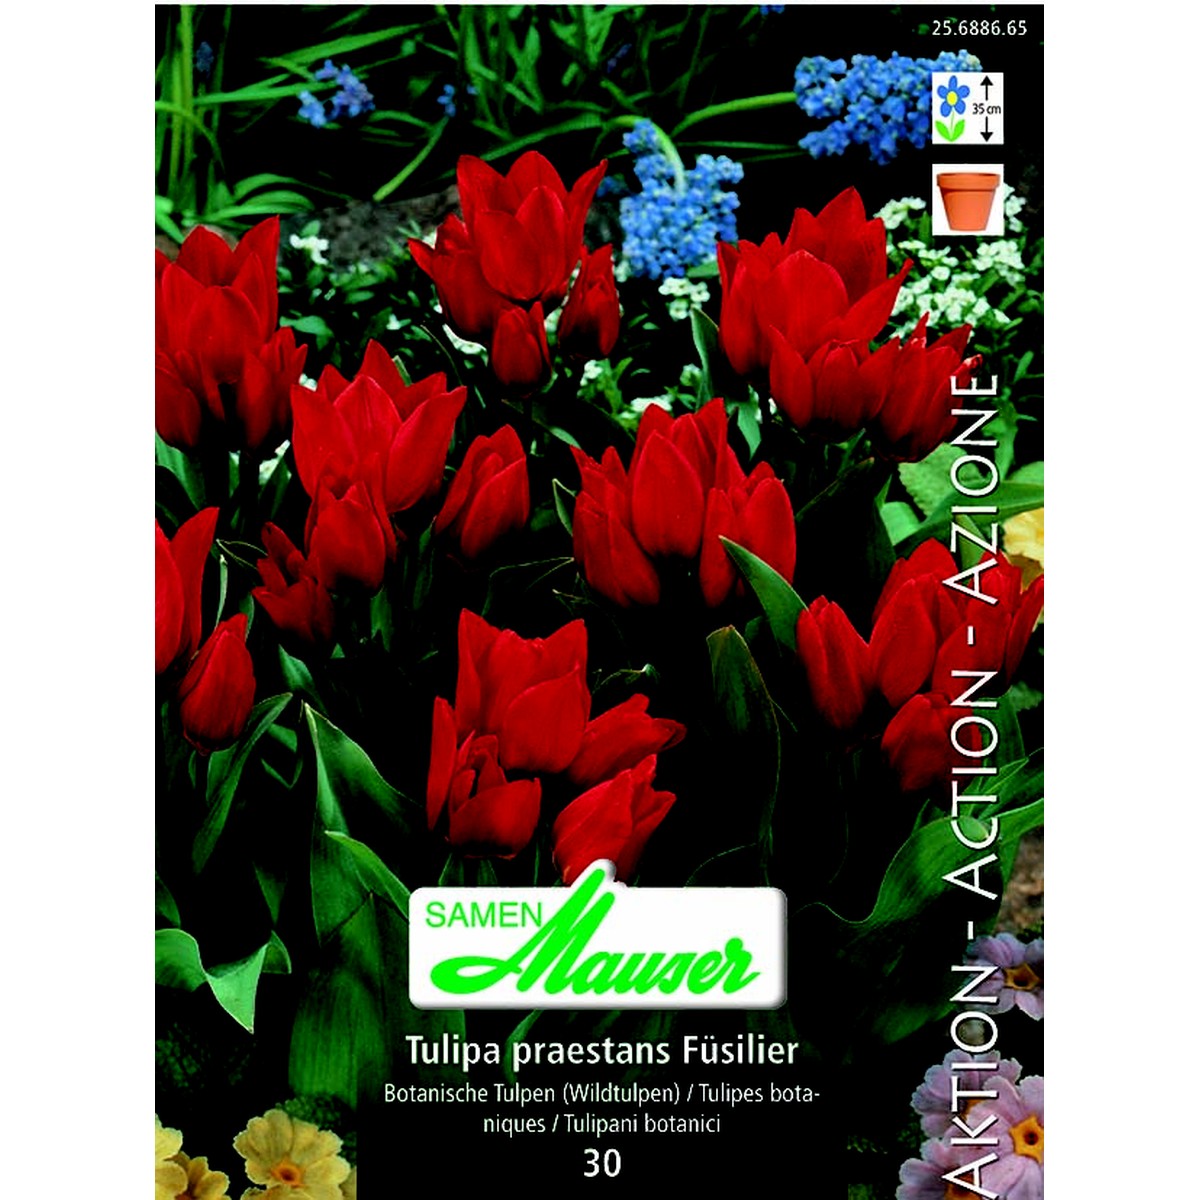   Tulipe botanique praest Füsilier 30  12/